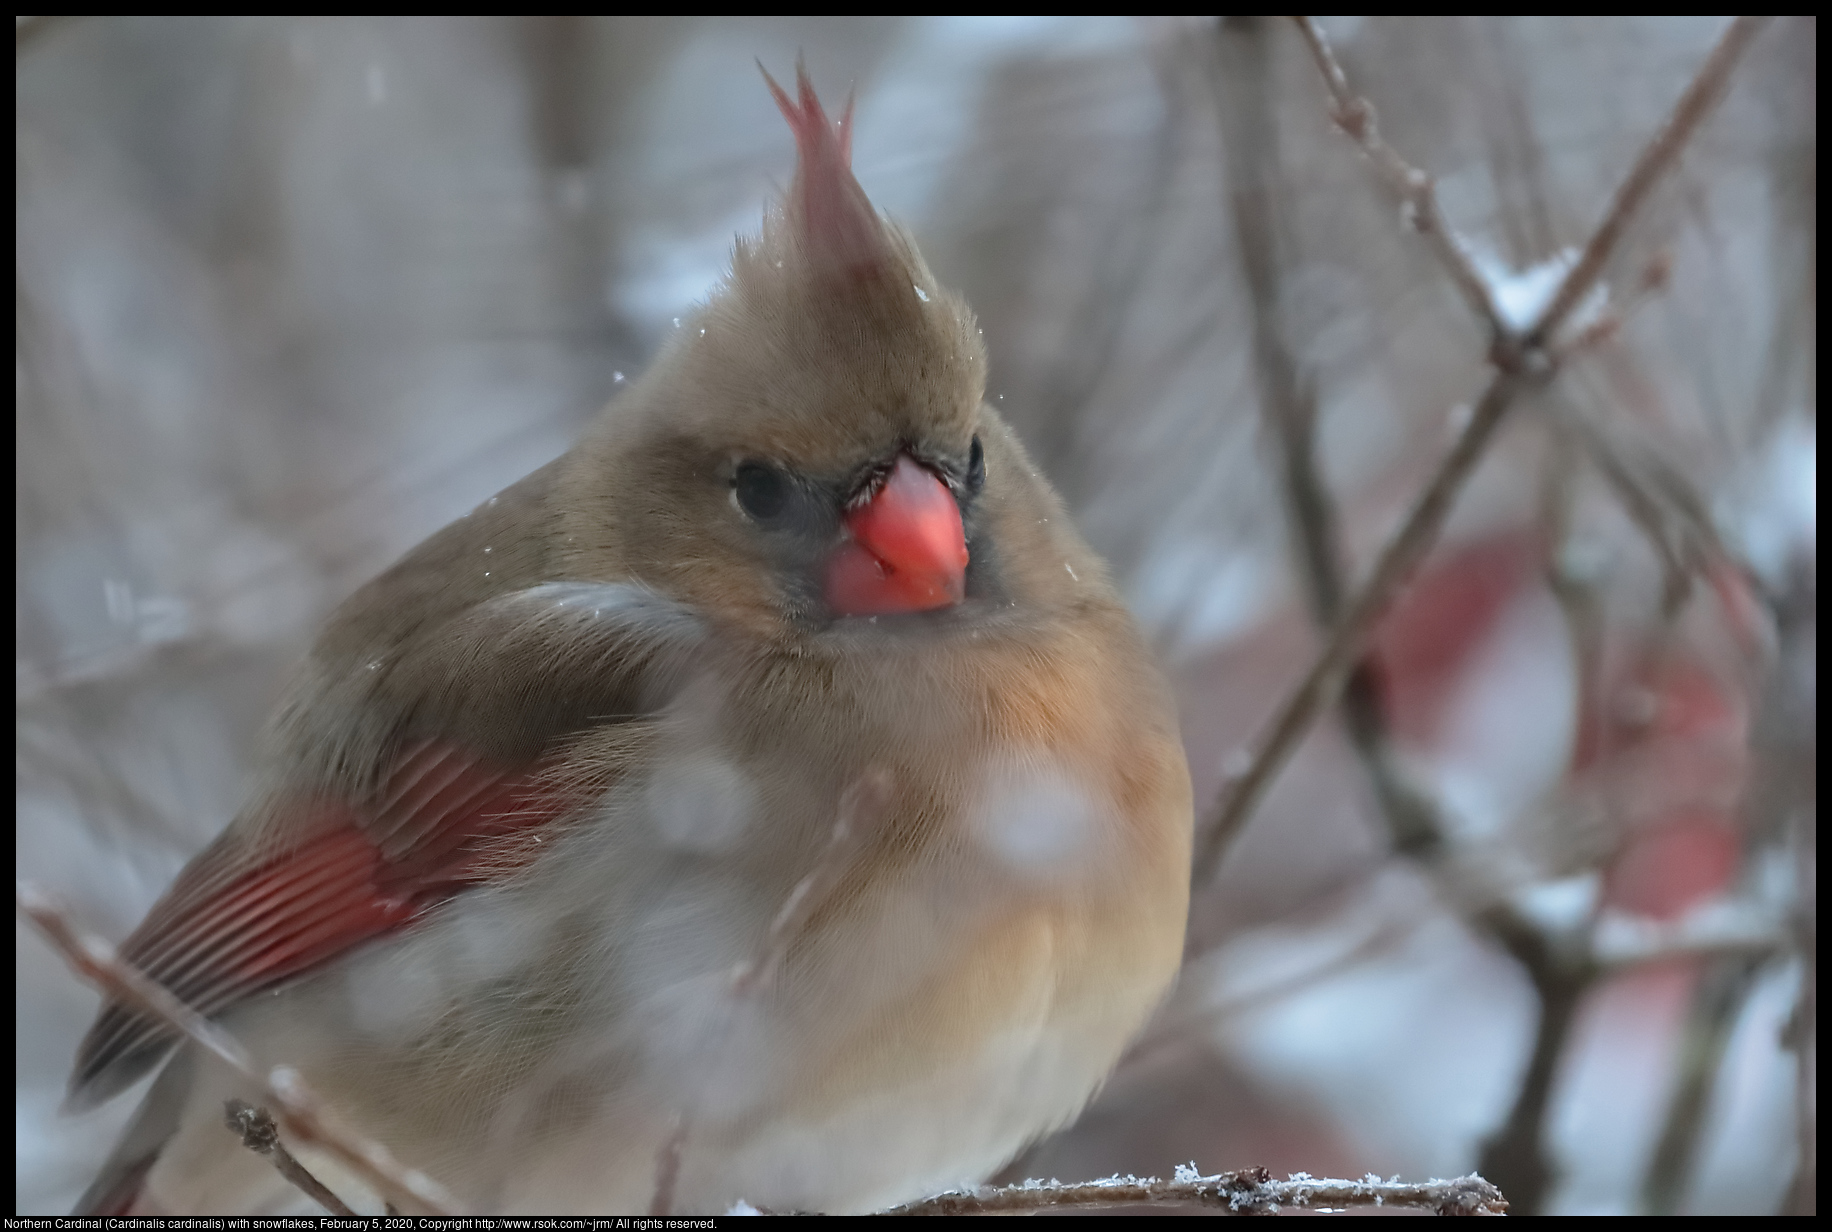 Northern Cardinal (Cardinalis cardinalis) with snowflakes, February 5, 2020